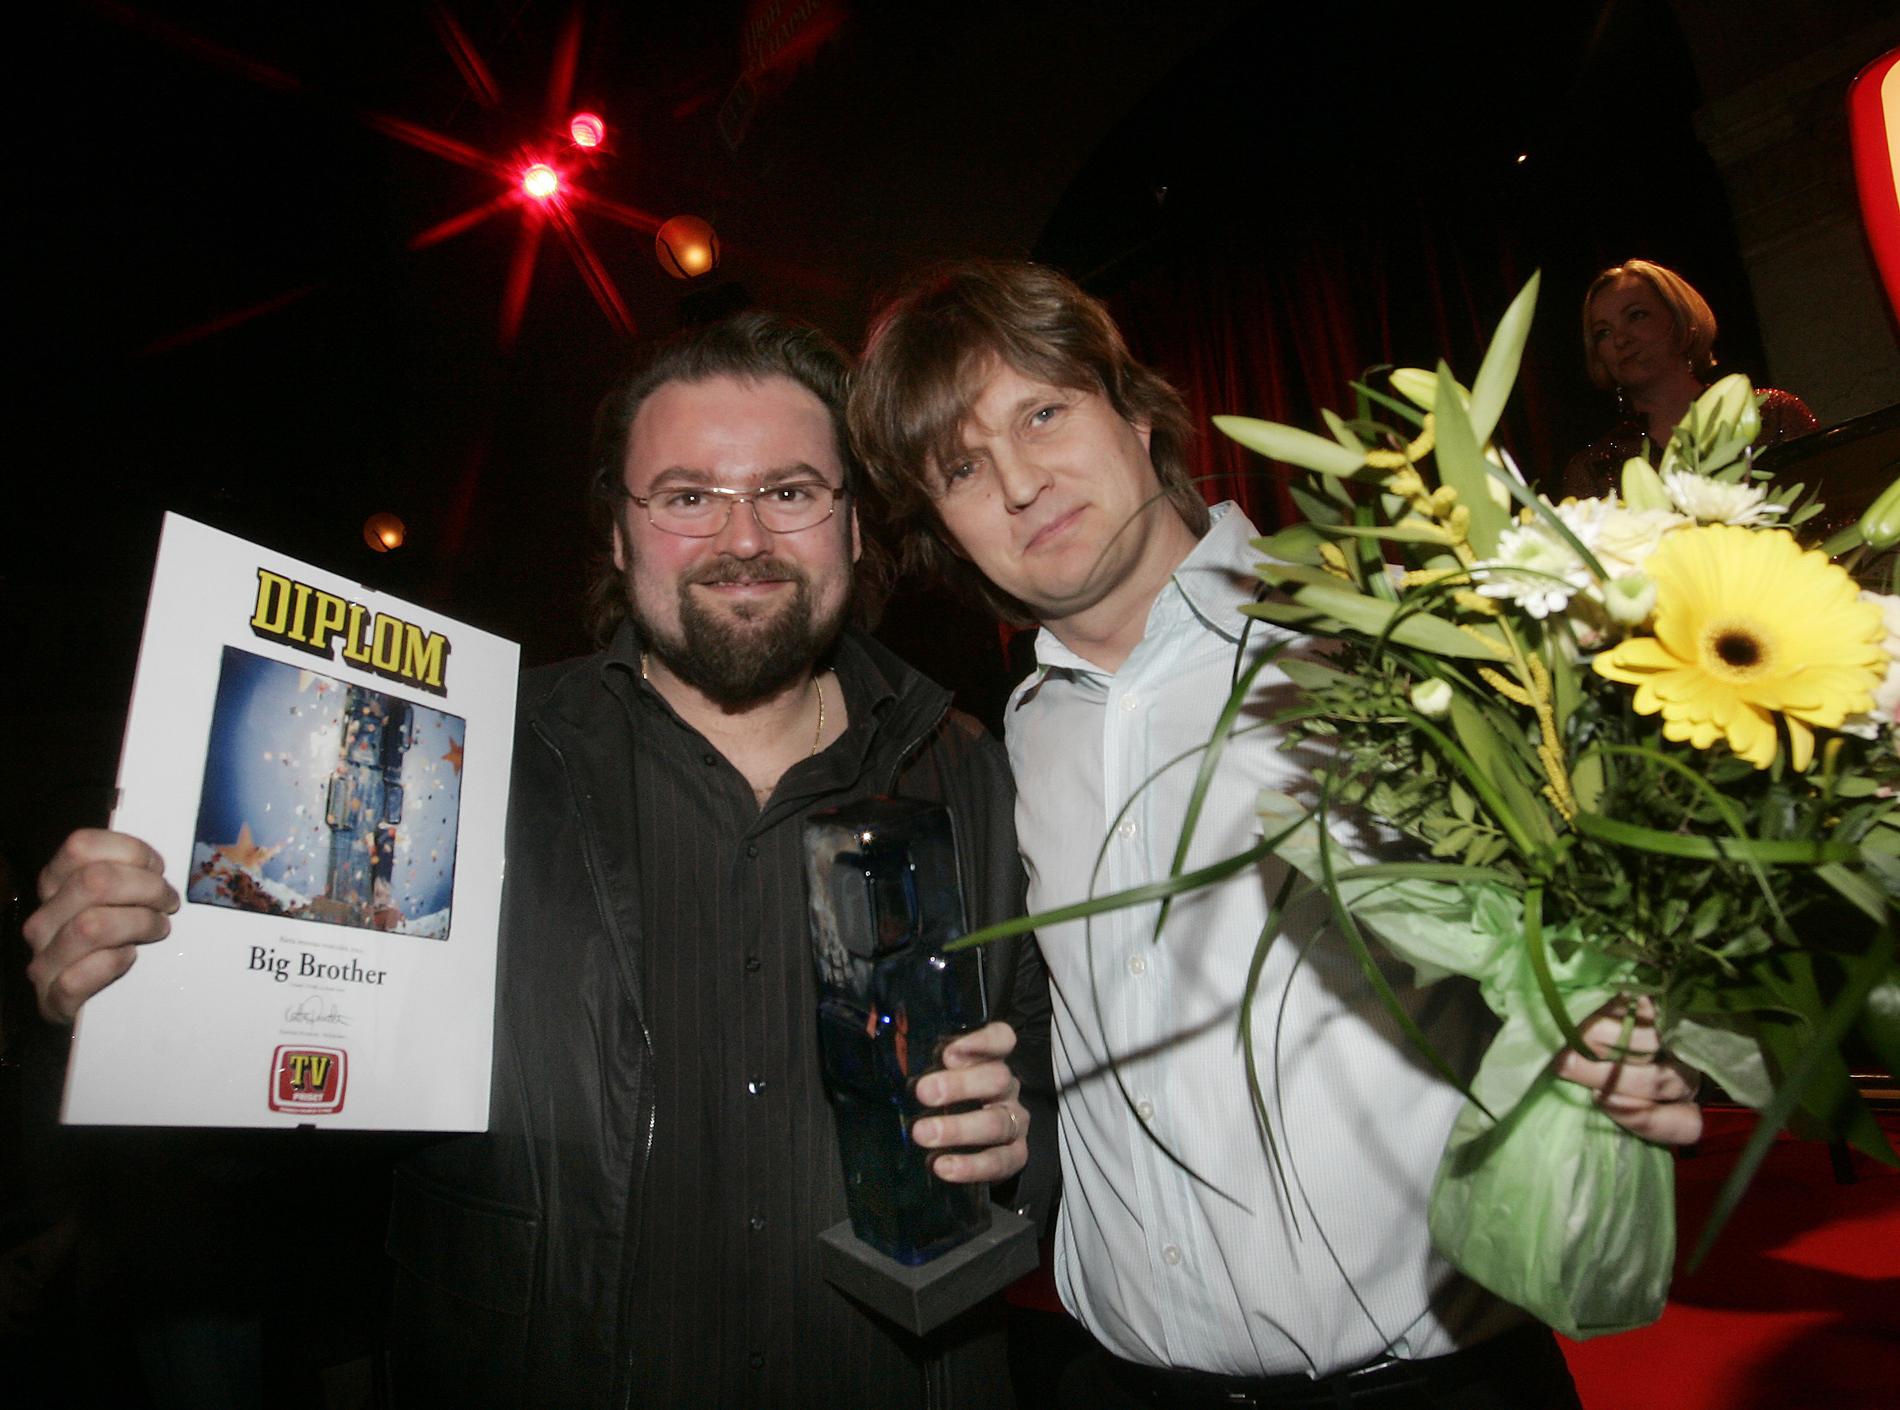 2005 fick ”Big brother” pris i kategorin ”Bästa dokusåpa” i Aftonbladets tv-pris. Utdelningen skedde i Vinterträdgården på Grand hotel i Stockholm och Adam Alsing firade priset tillsammans med Kanal 5:s programchef Johan Westman.